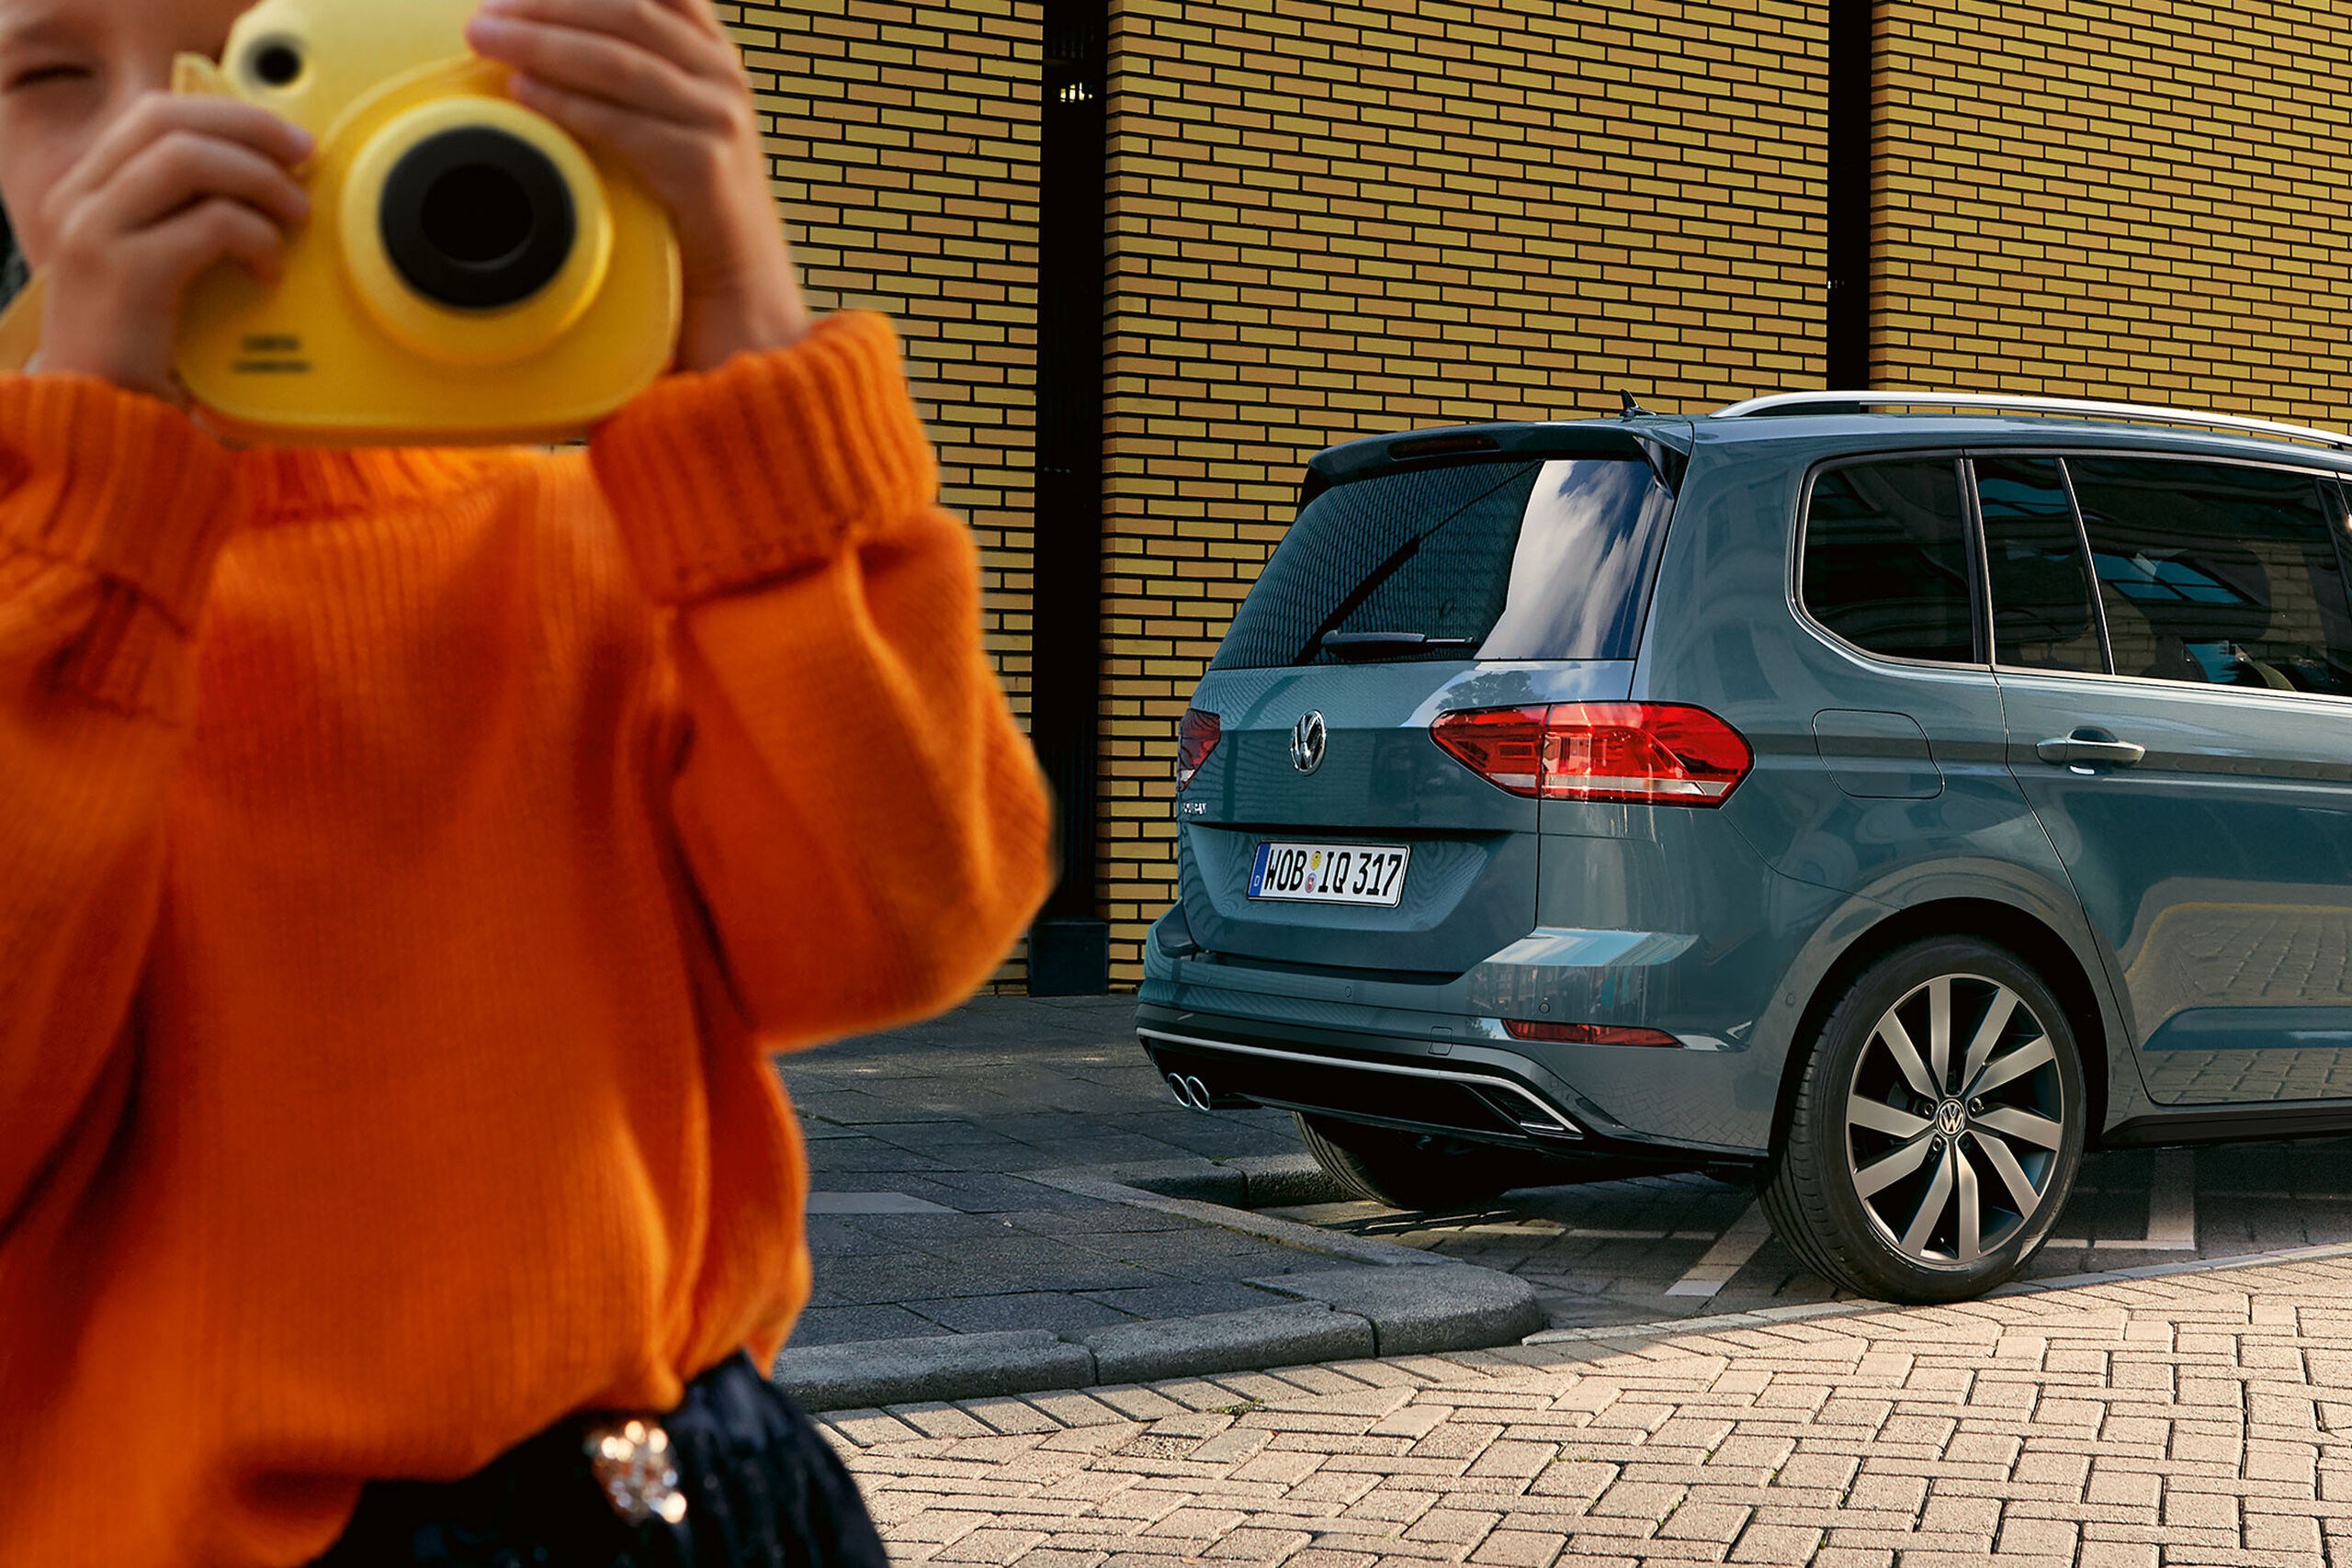 Uma criança com uma grande máquina fotográfica amarela fica em frente de um carro VW azul com pneus de Verão